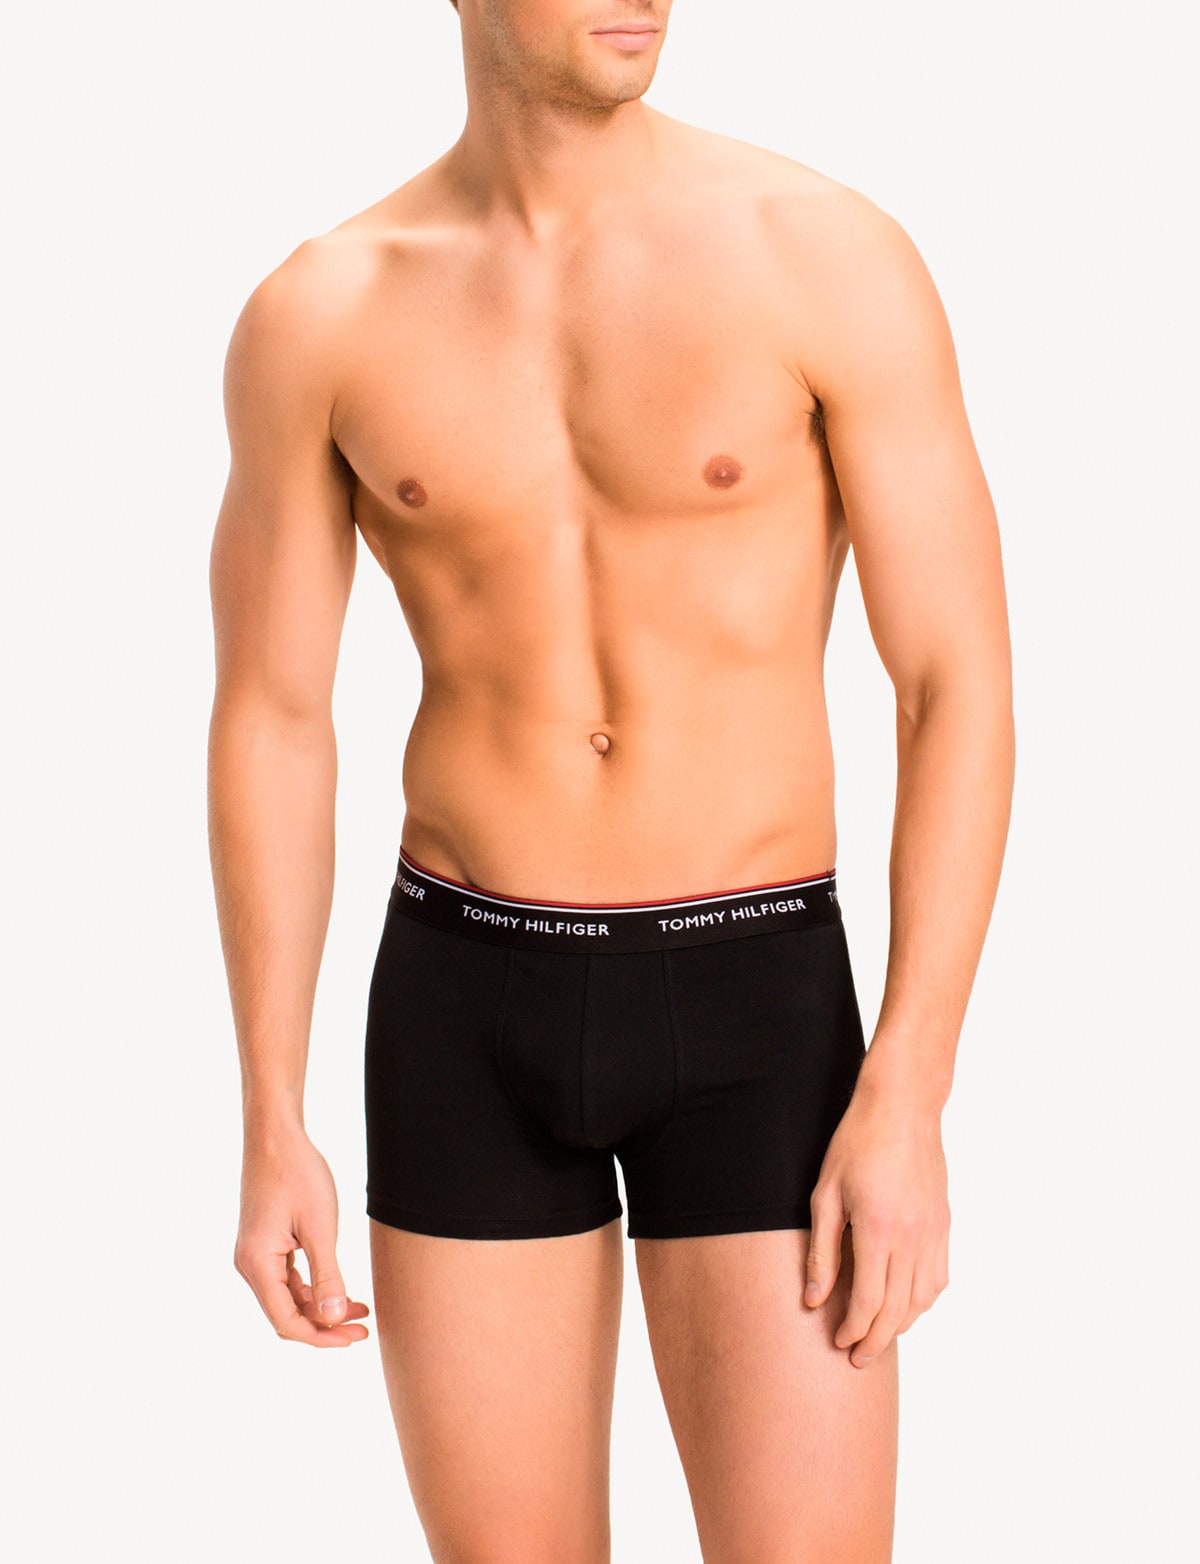 Tommy Hilfiger Stretch Cotton Trunk, 3-Pack, Black - Underwear